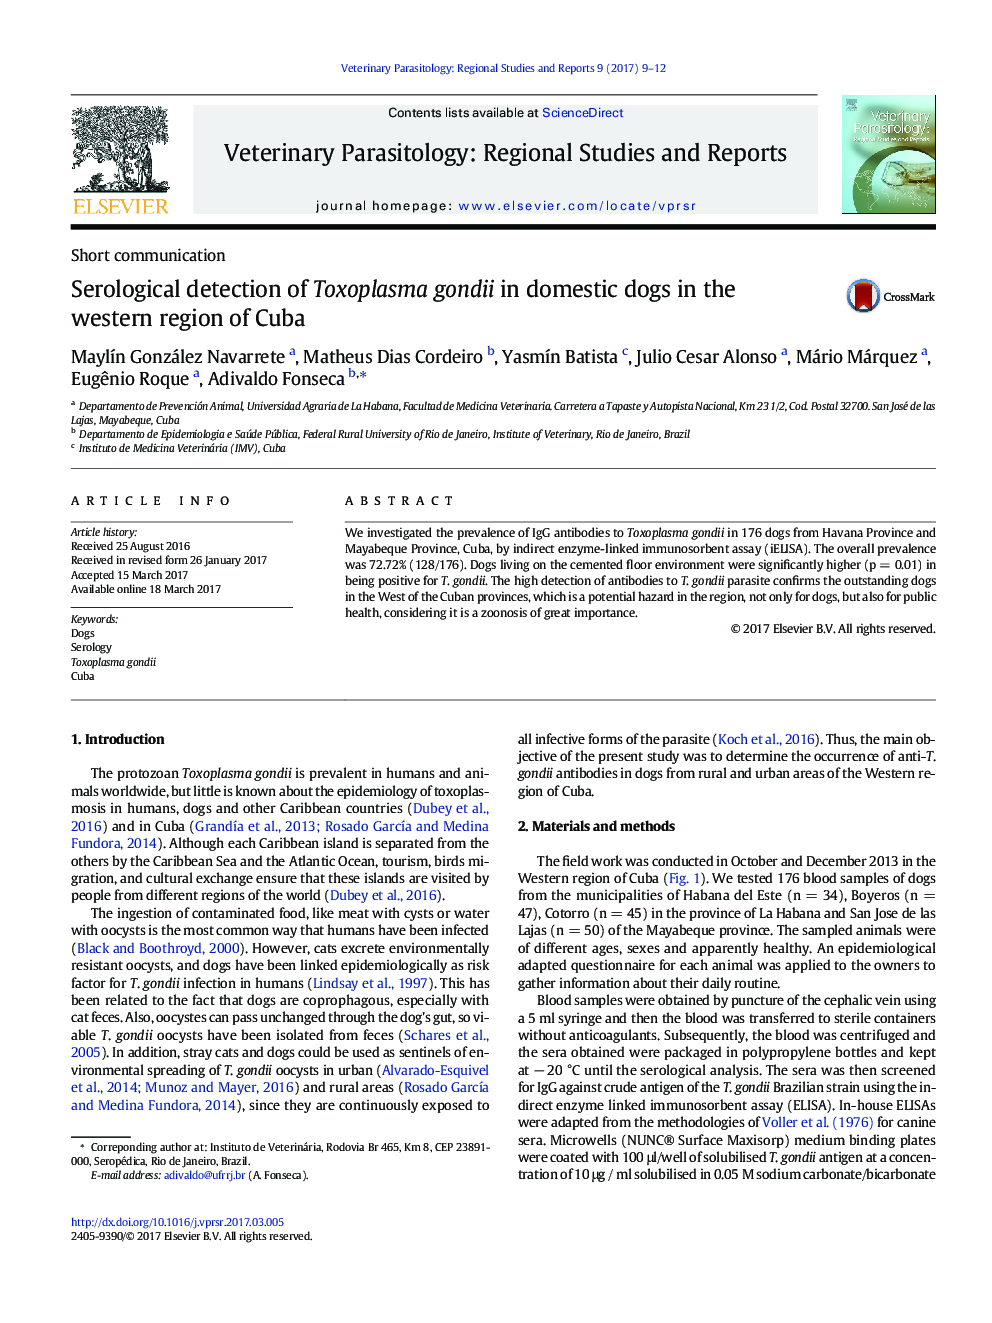 تشخیص سلوک توکسوپلاسما گوندی در سگ های خانگی در منطقه غربی کوبا 